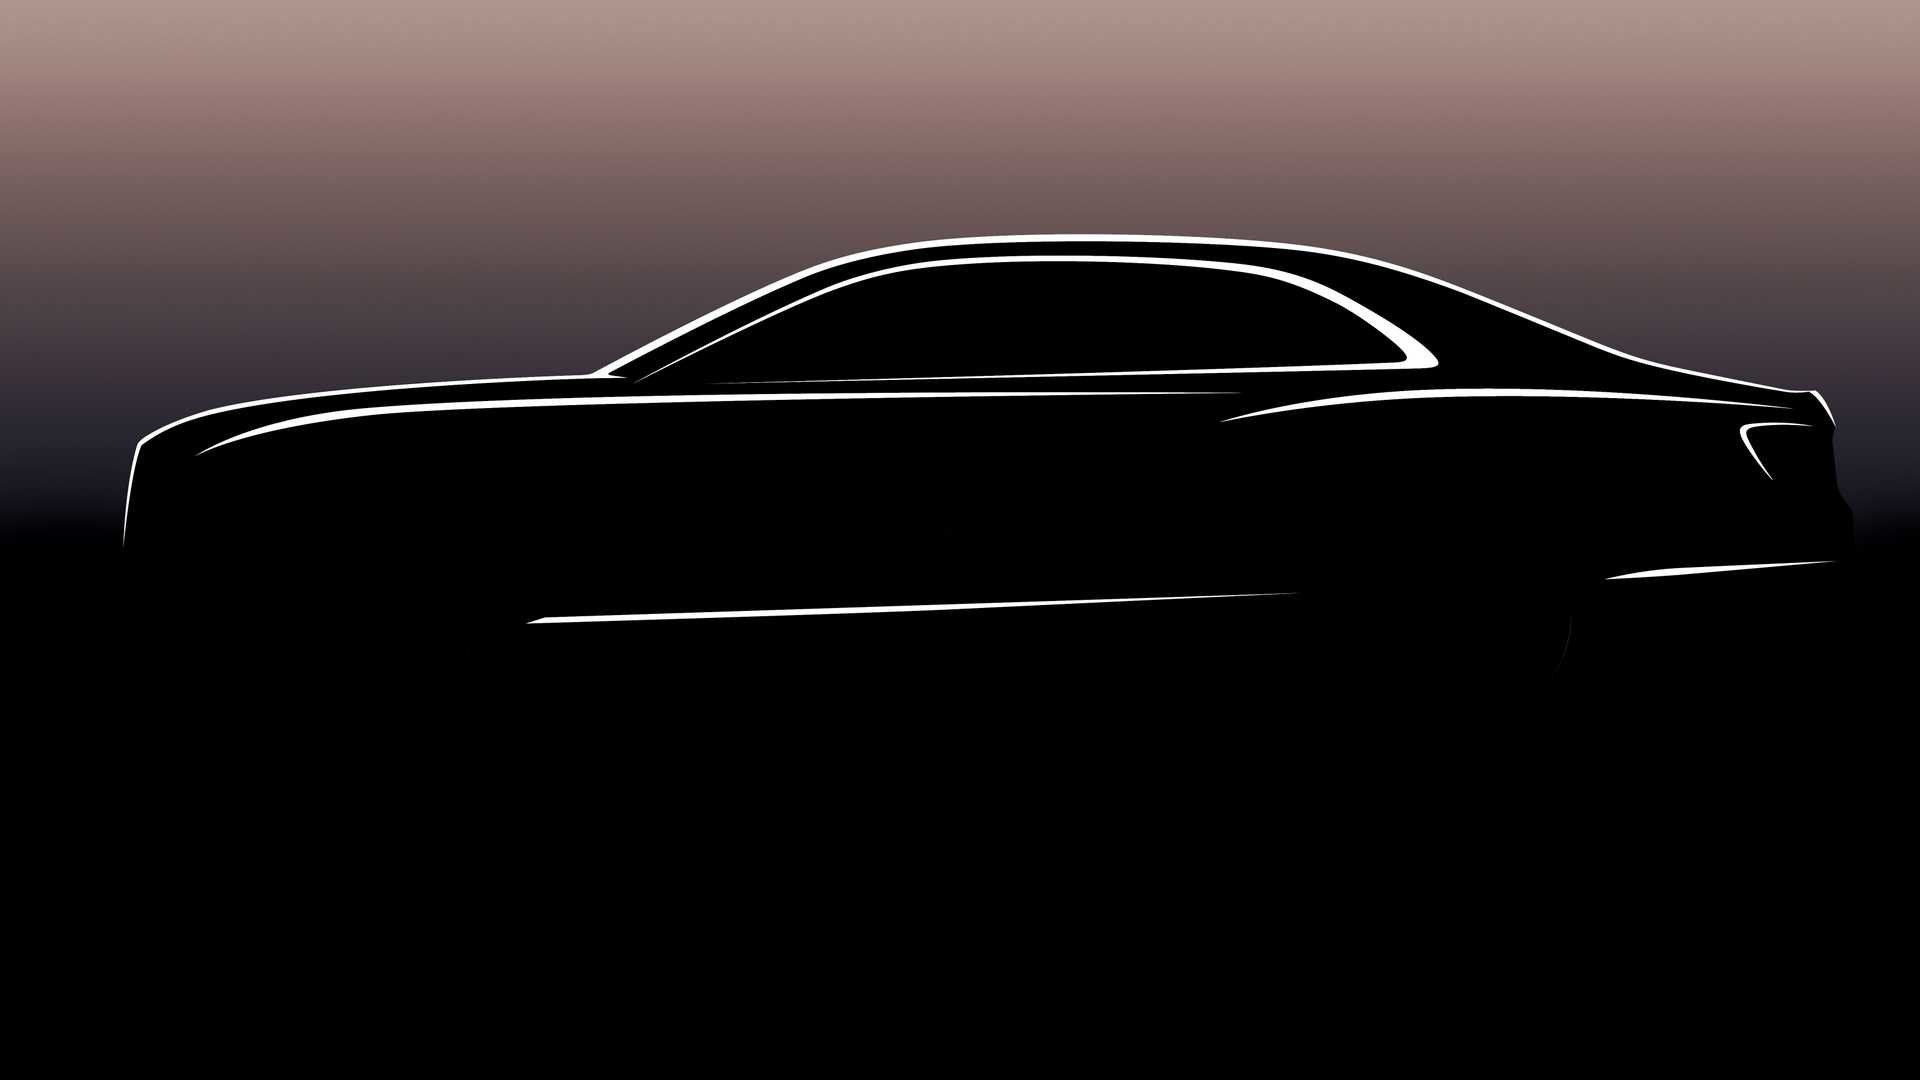 Bentley se připravuje na premiéru nové generace modelu Flying Spur